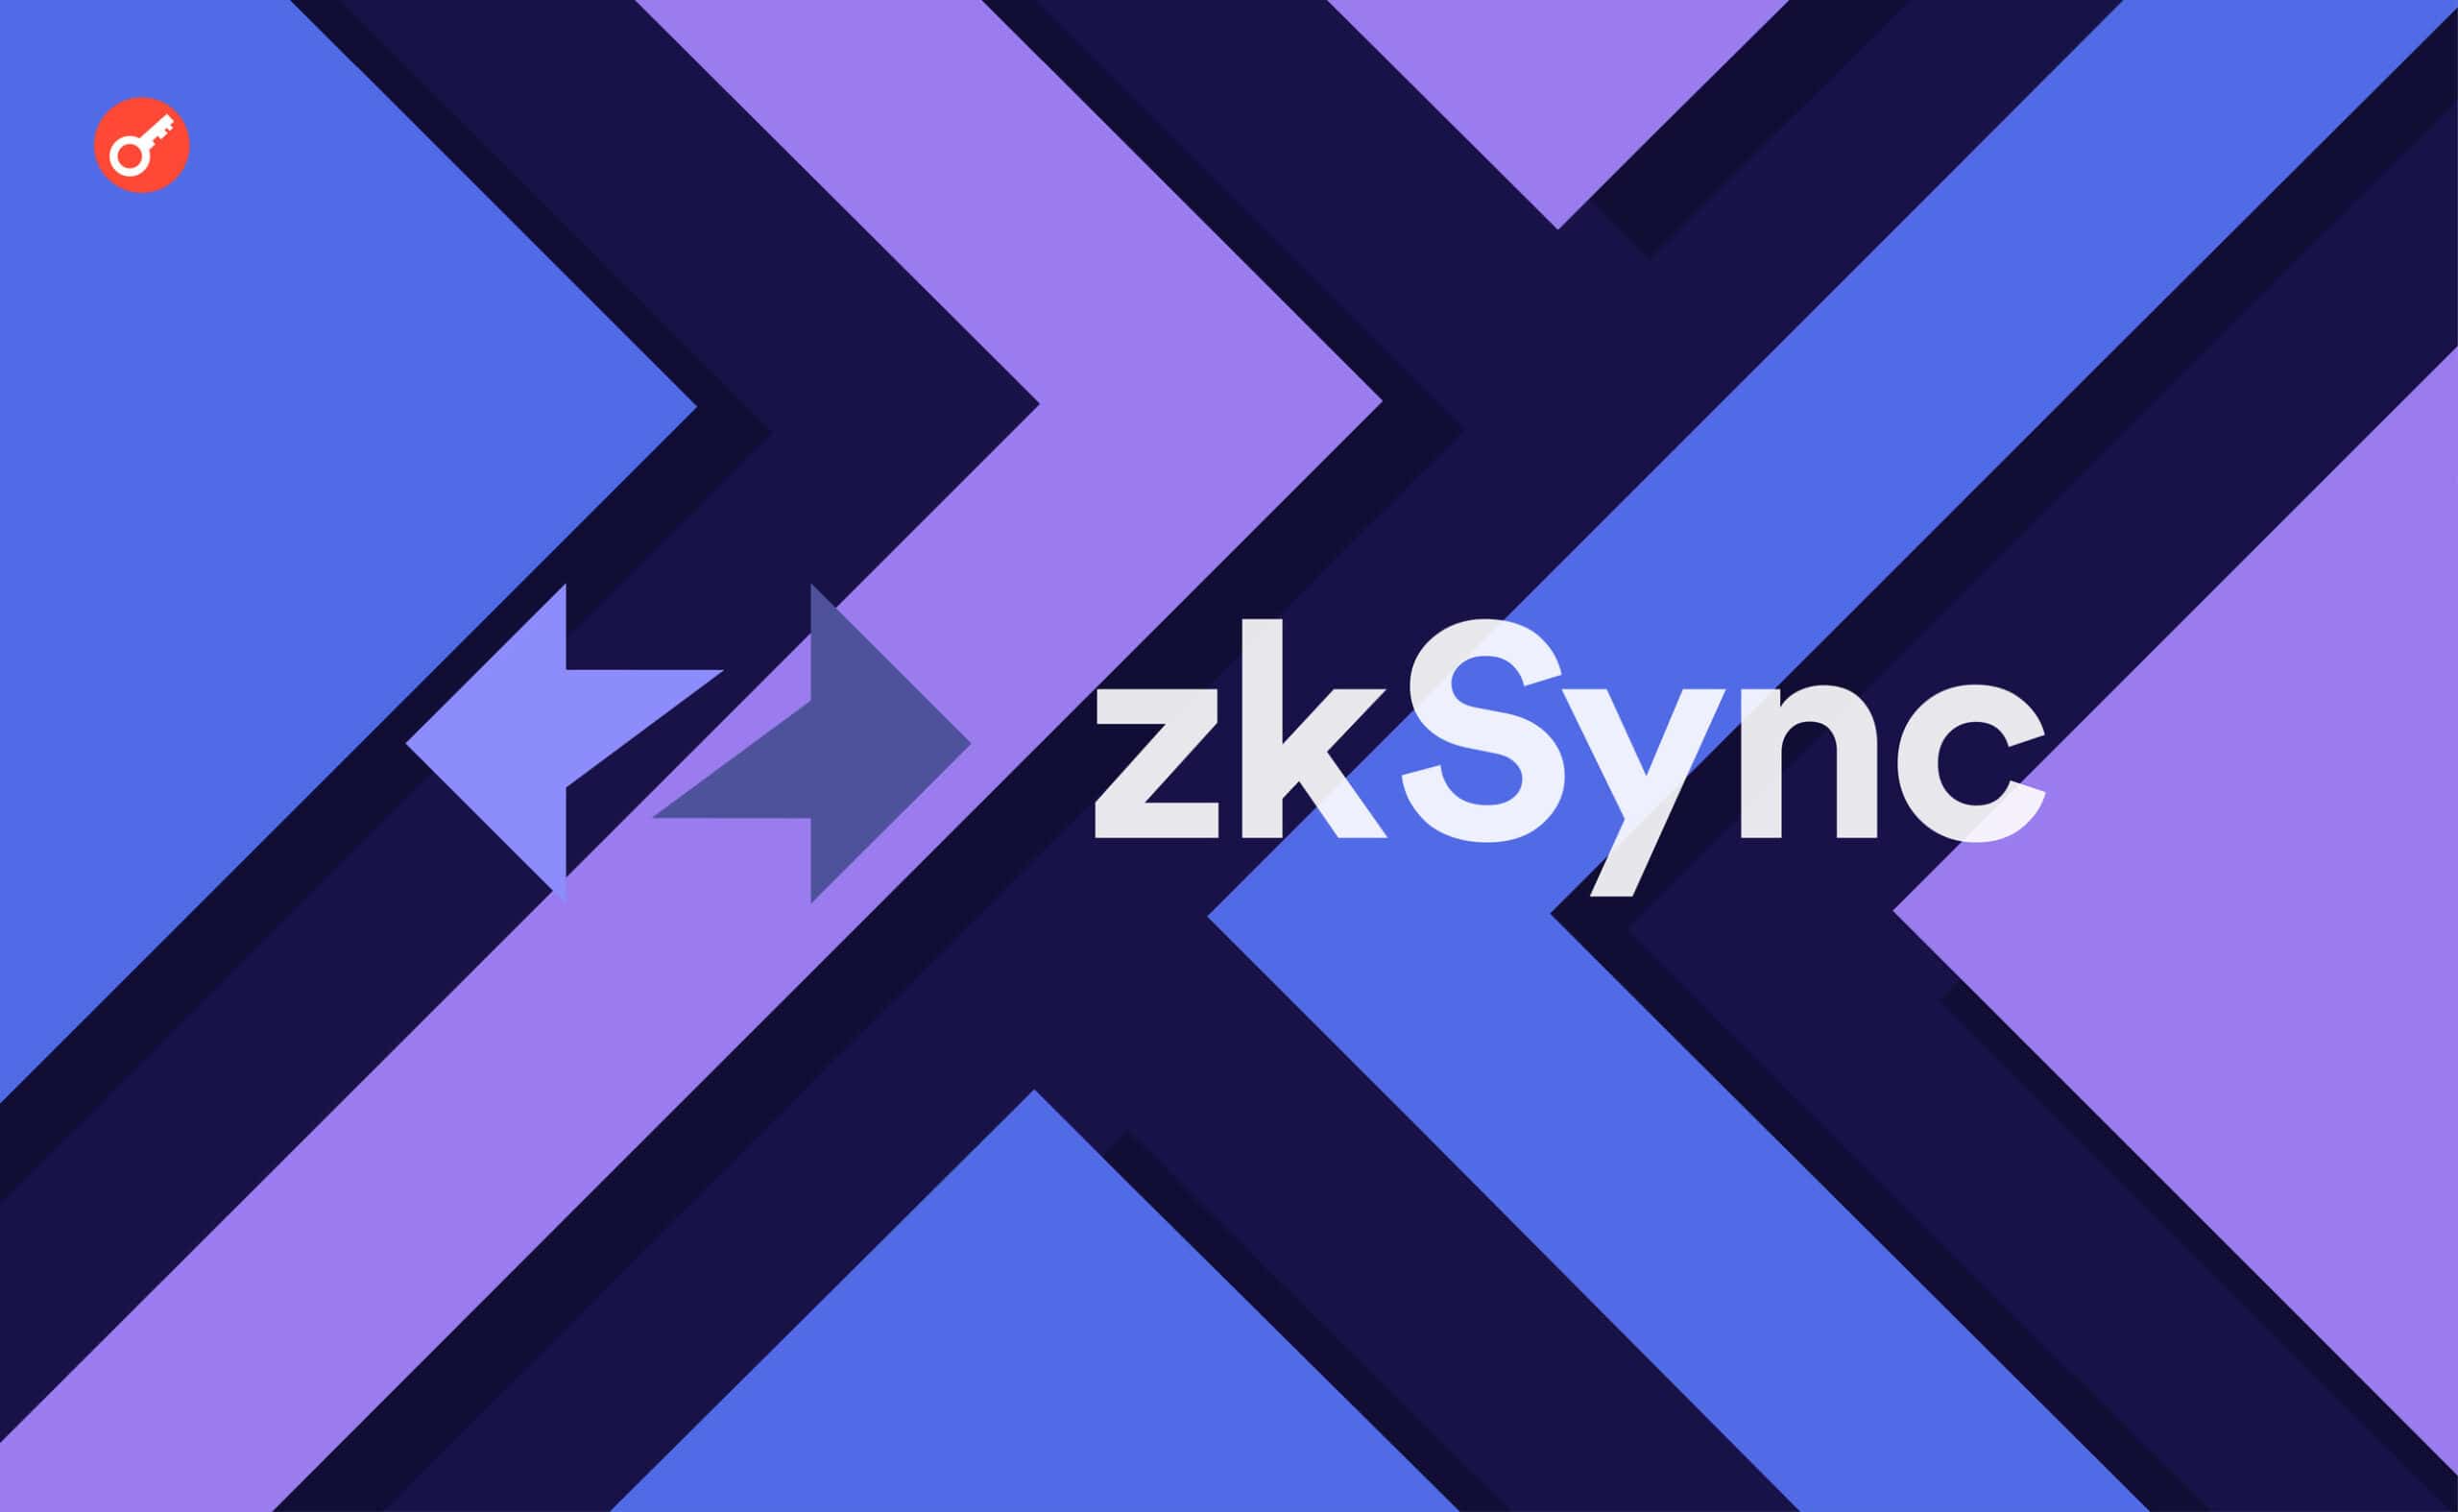 zkSync Era не работала в течение 4 часов. Заглавный коллаж новости.